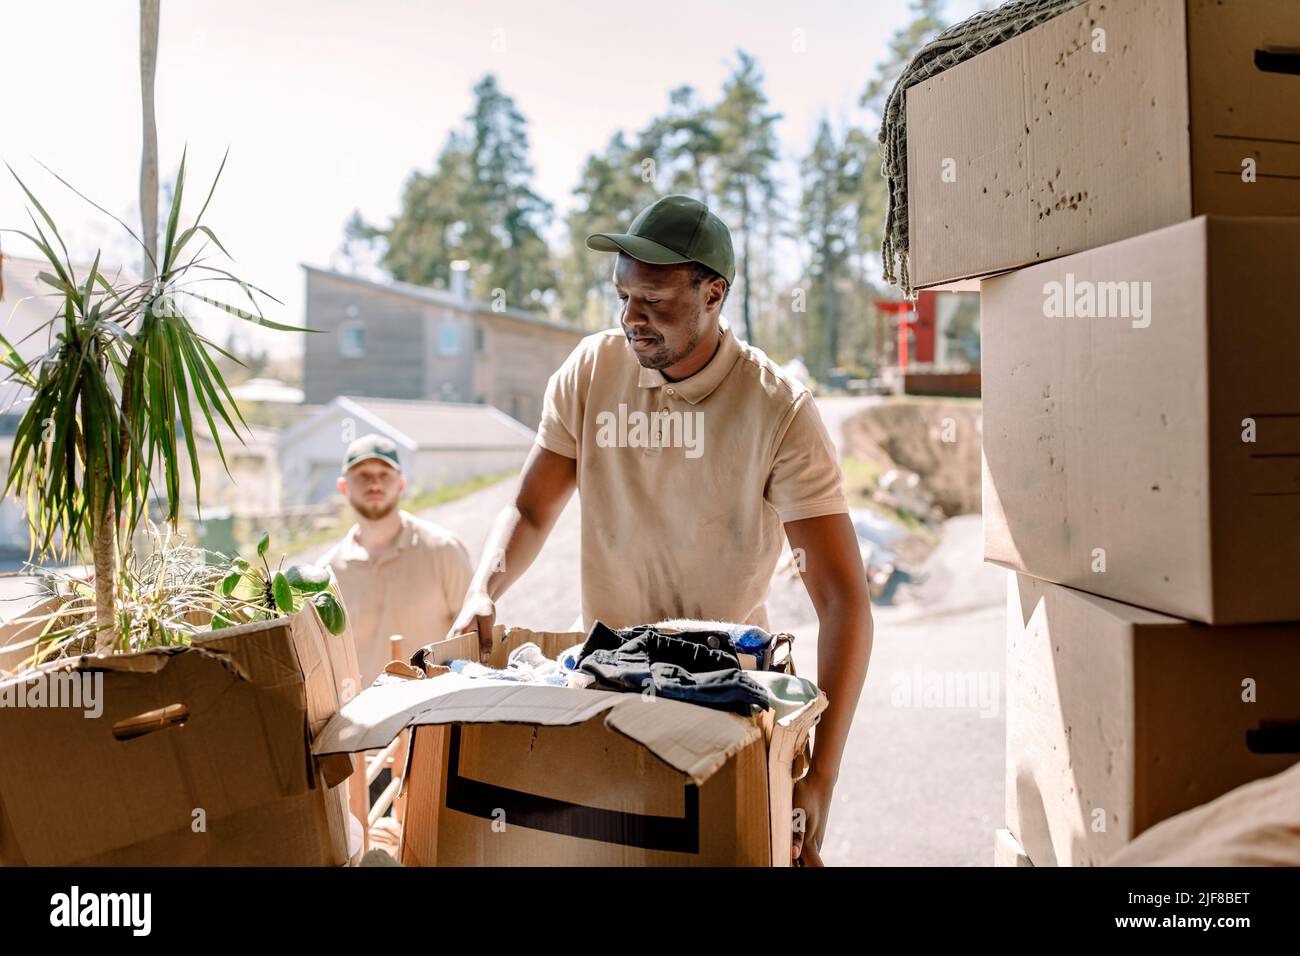 Les Movers ramassant les boîtes en carton du camion de livraison Banque D'Images